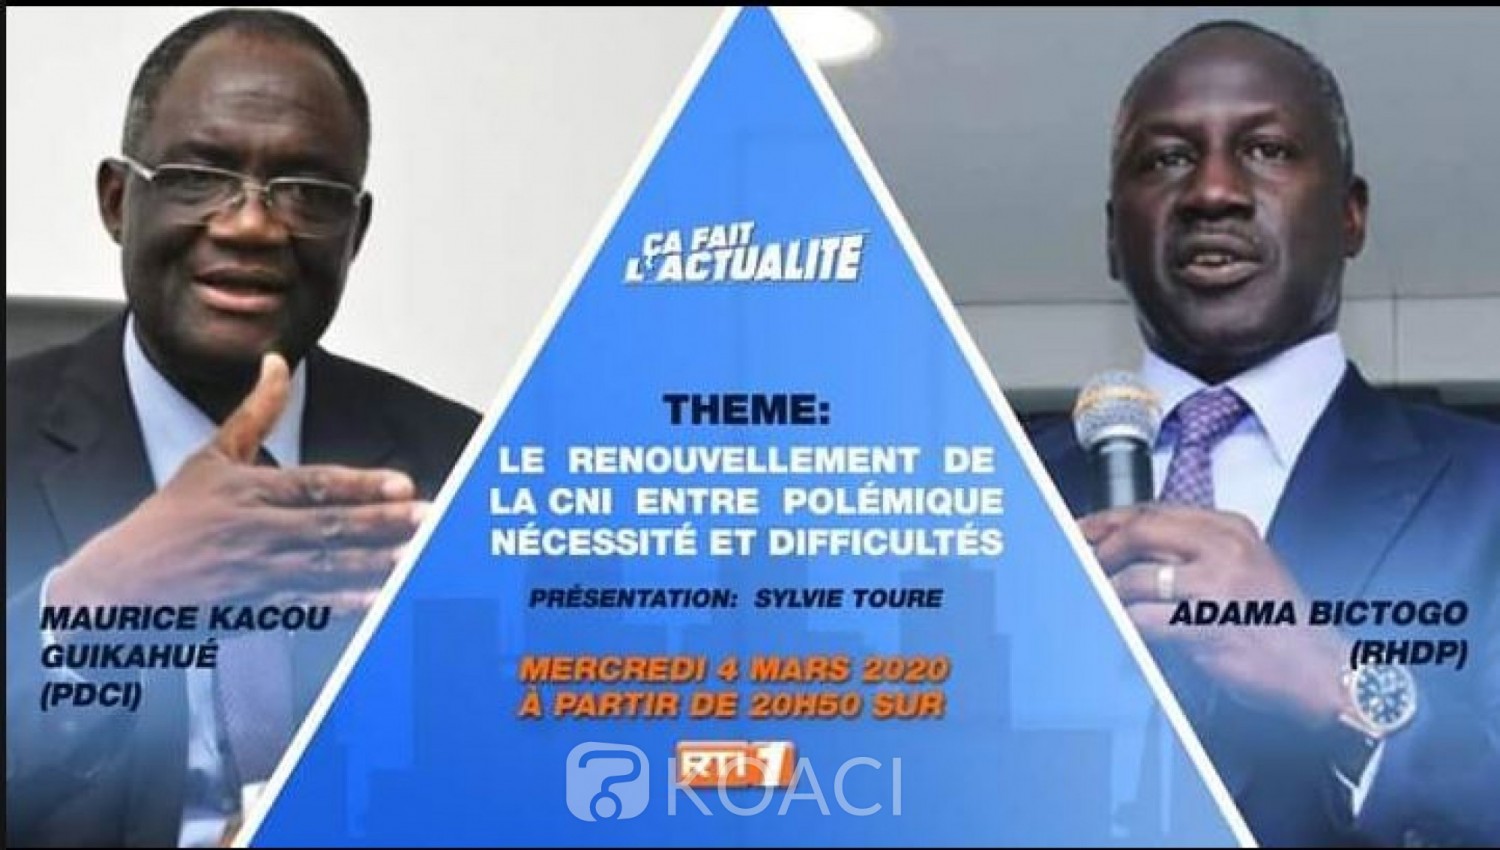 Côte d'Ivoire : Polémique sur le renouvellement et l'établissement des CNI, face-à-face télévisé mercredi entre le PDCI et le RHDP